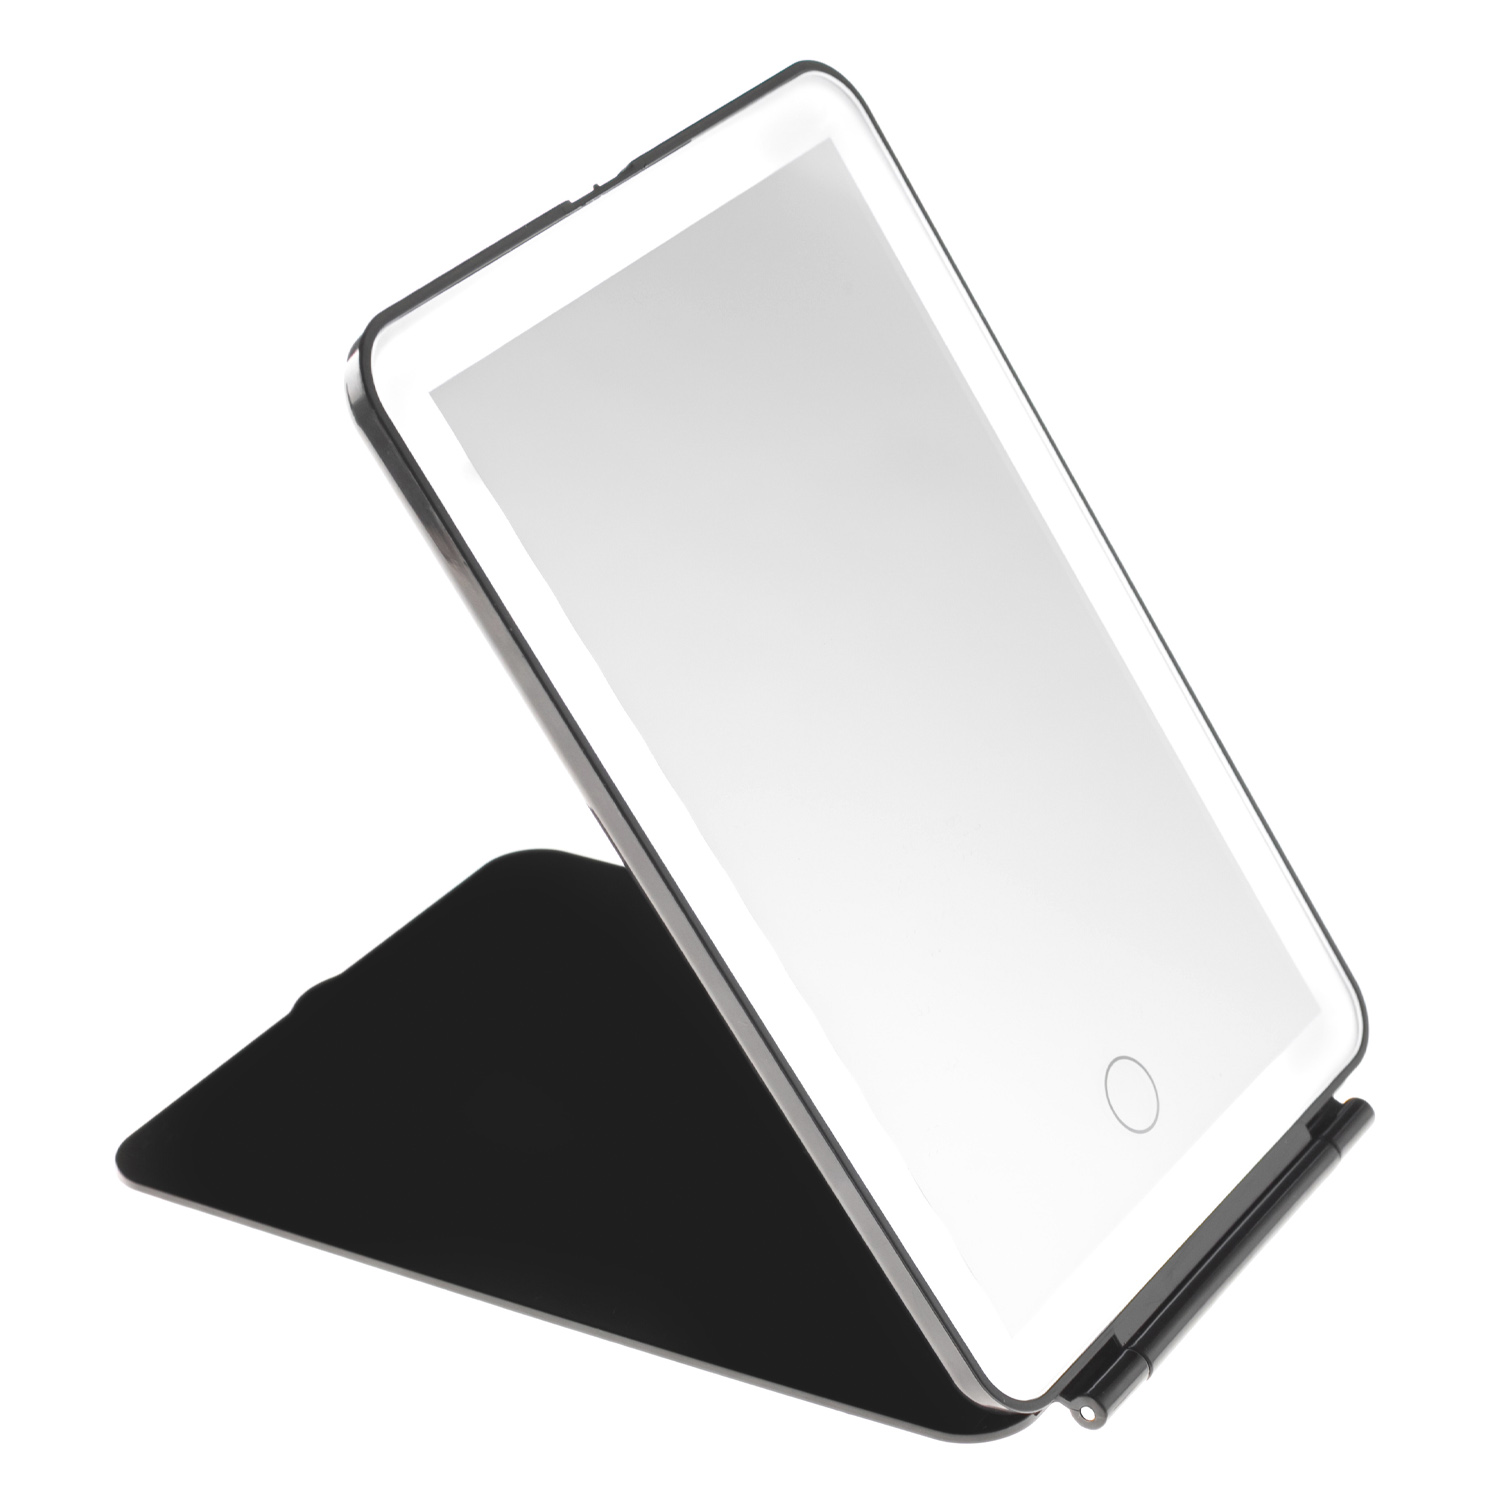 Зеркало косметическое CleverCare в форме планшета с LED подсветкой монохром цвет черный - фото 4